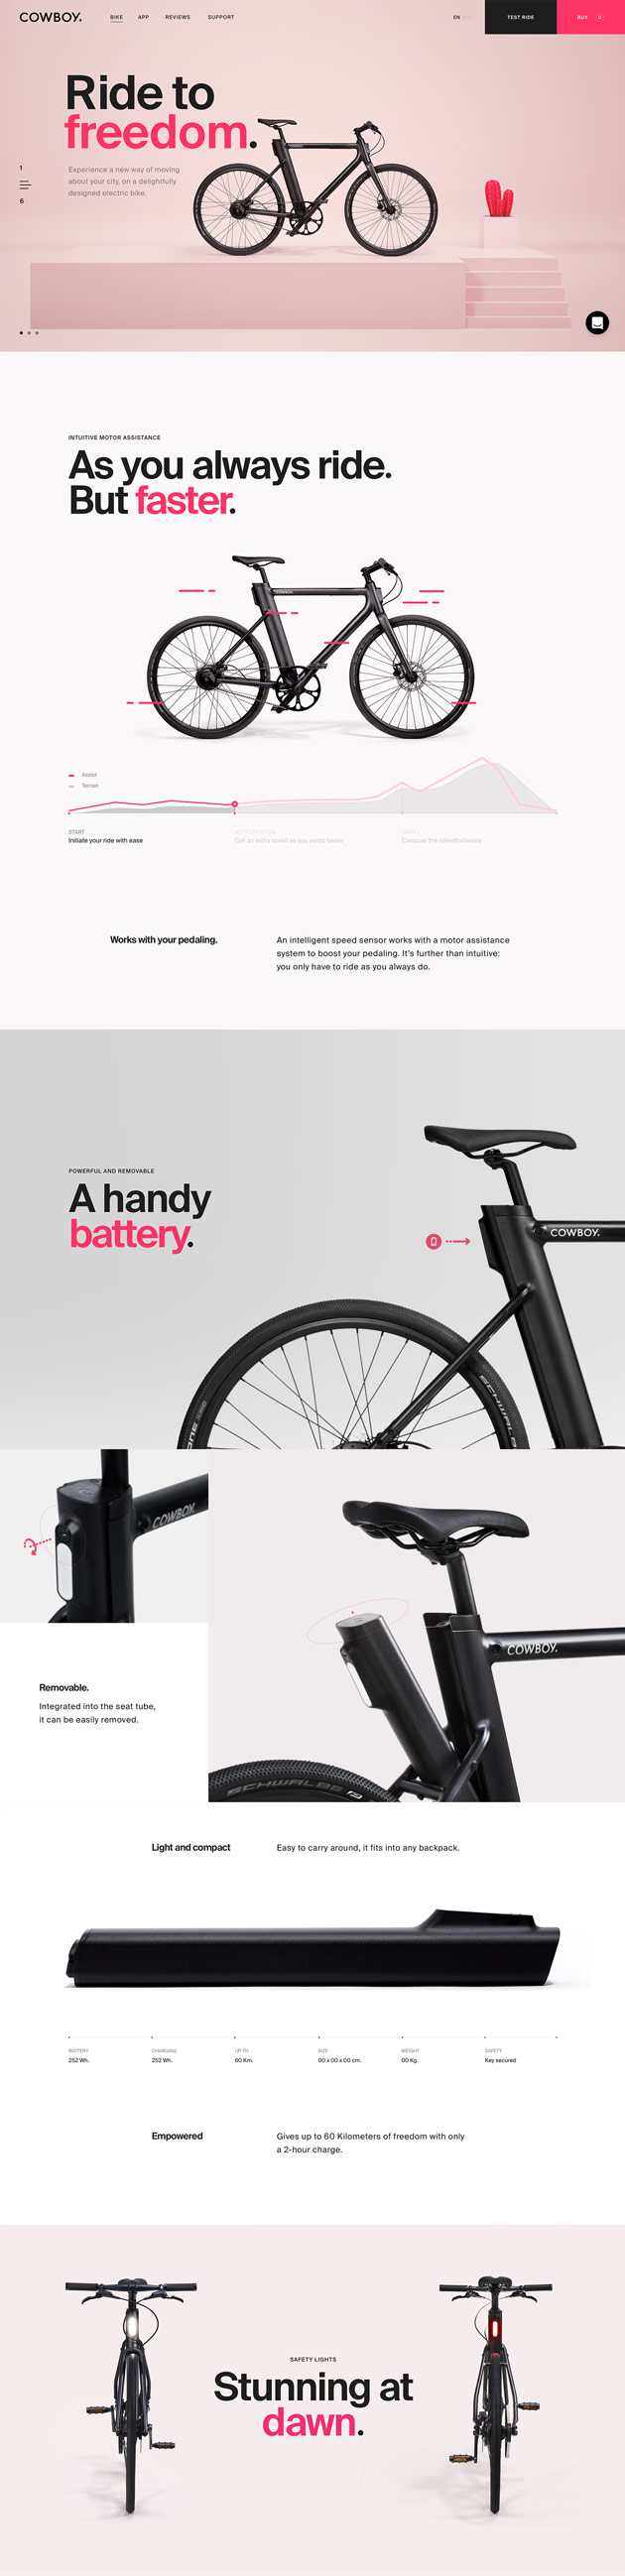 电动自行车Cowboy品牌视觉设计